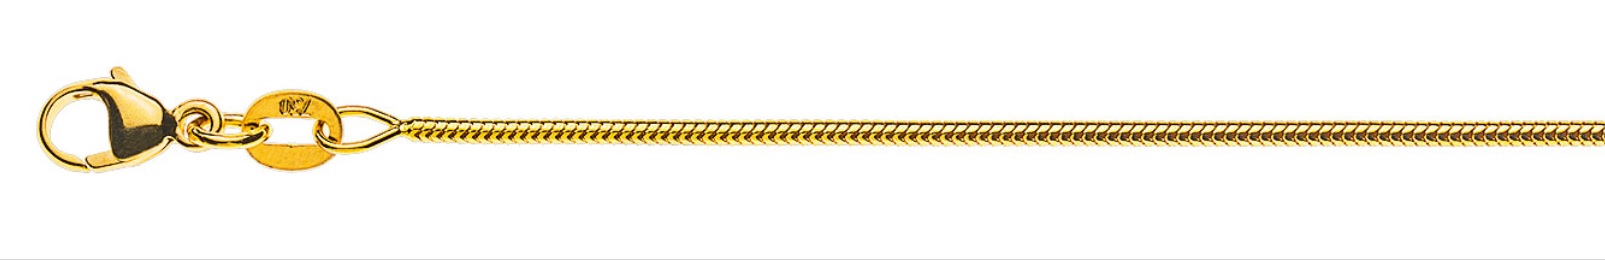 AURONOS Prestige Halskette Gelbgold 18K Schlangenkette 45cm 1.2mm